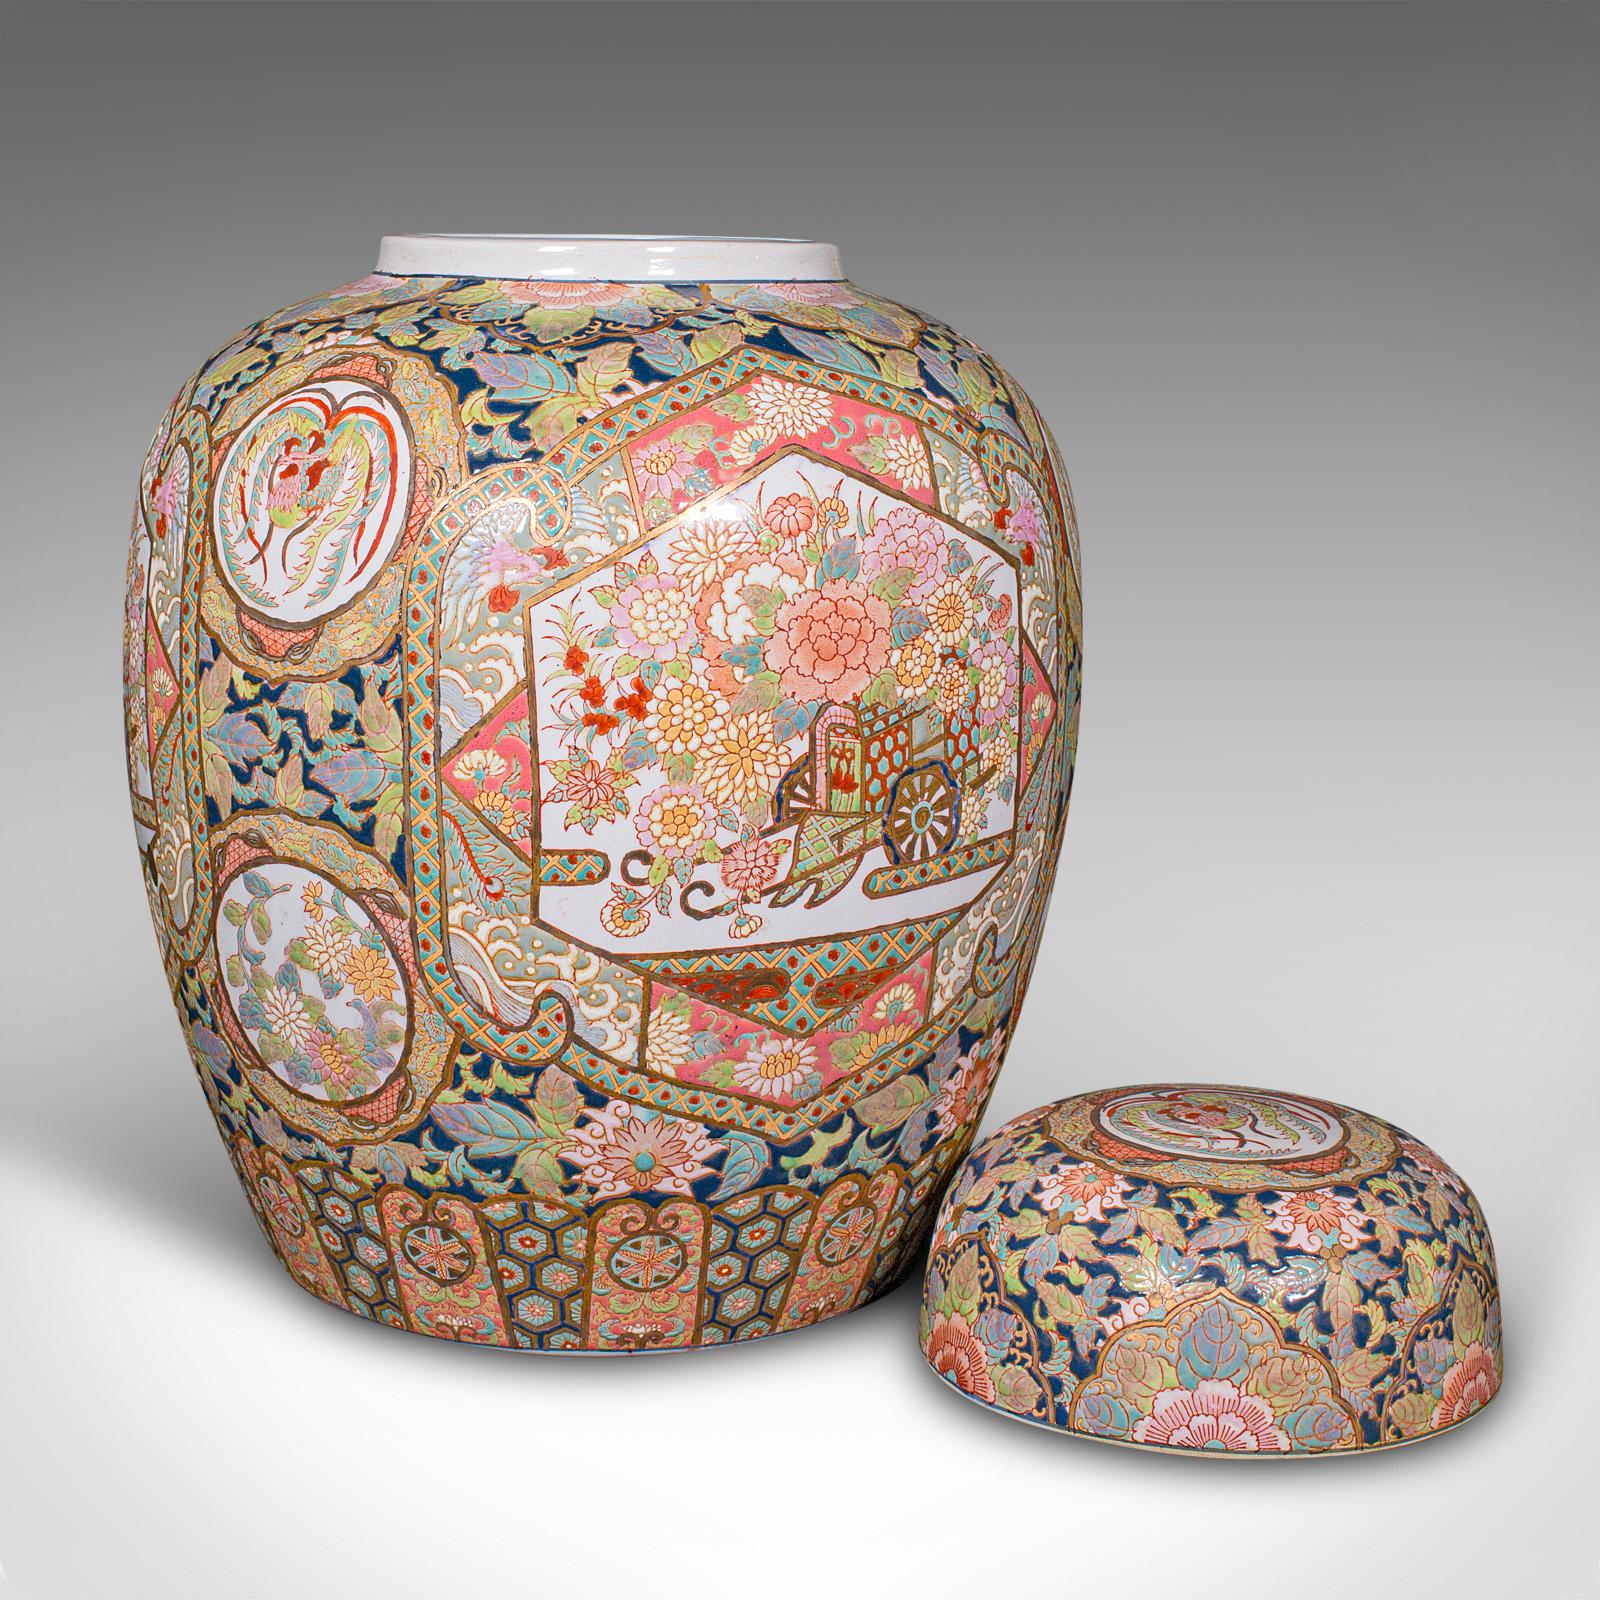 Il s'agit d'un grand pot de gingembre vintage. Vase chinois à couvercle en céramique, datant de la fin de la période Art déco, vers 1940.

Proportion impressionnante, offrant une large toile pour une décoration abondante
Présente une patine d'usage